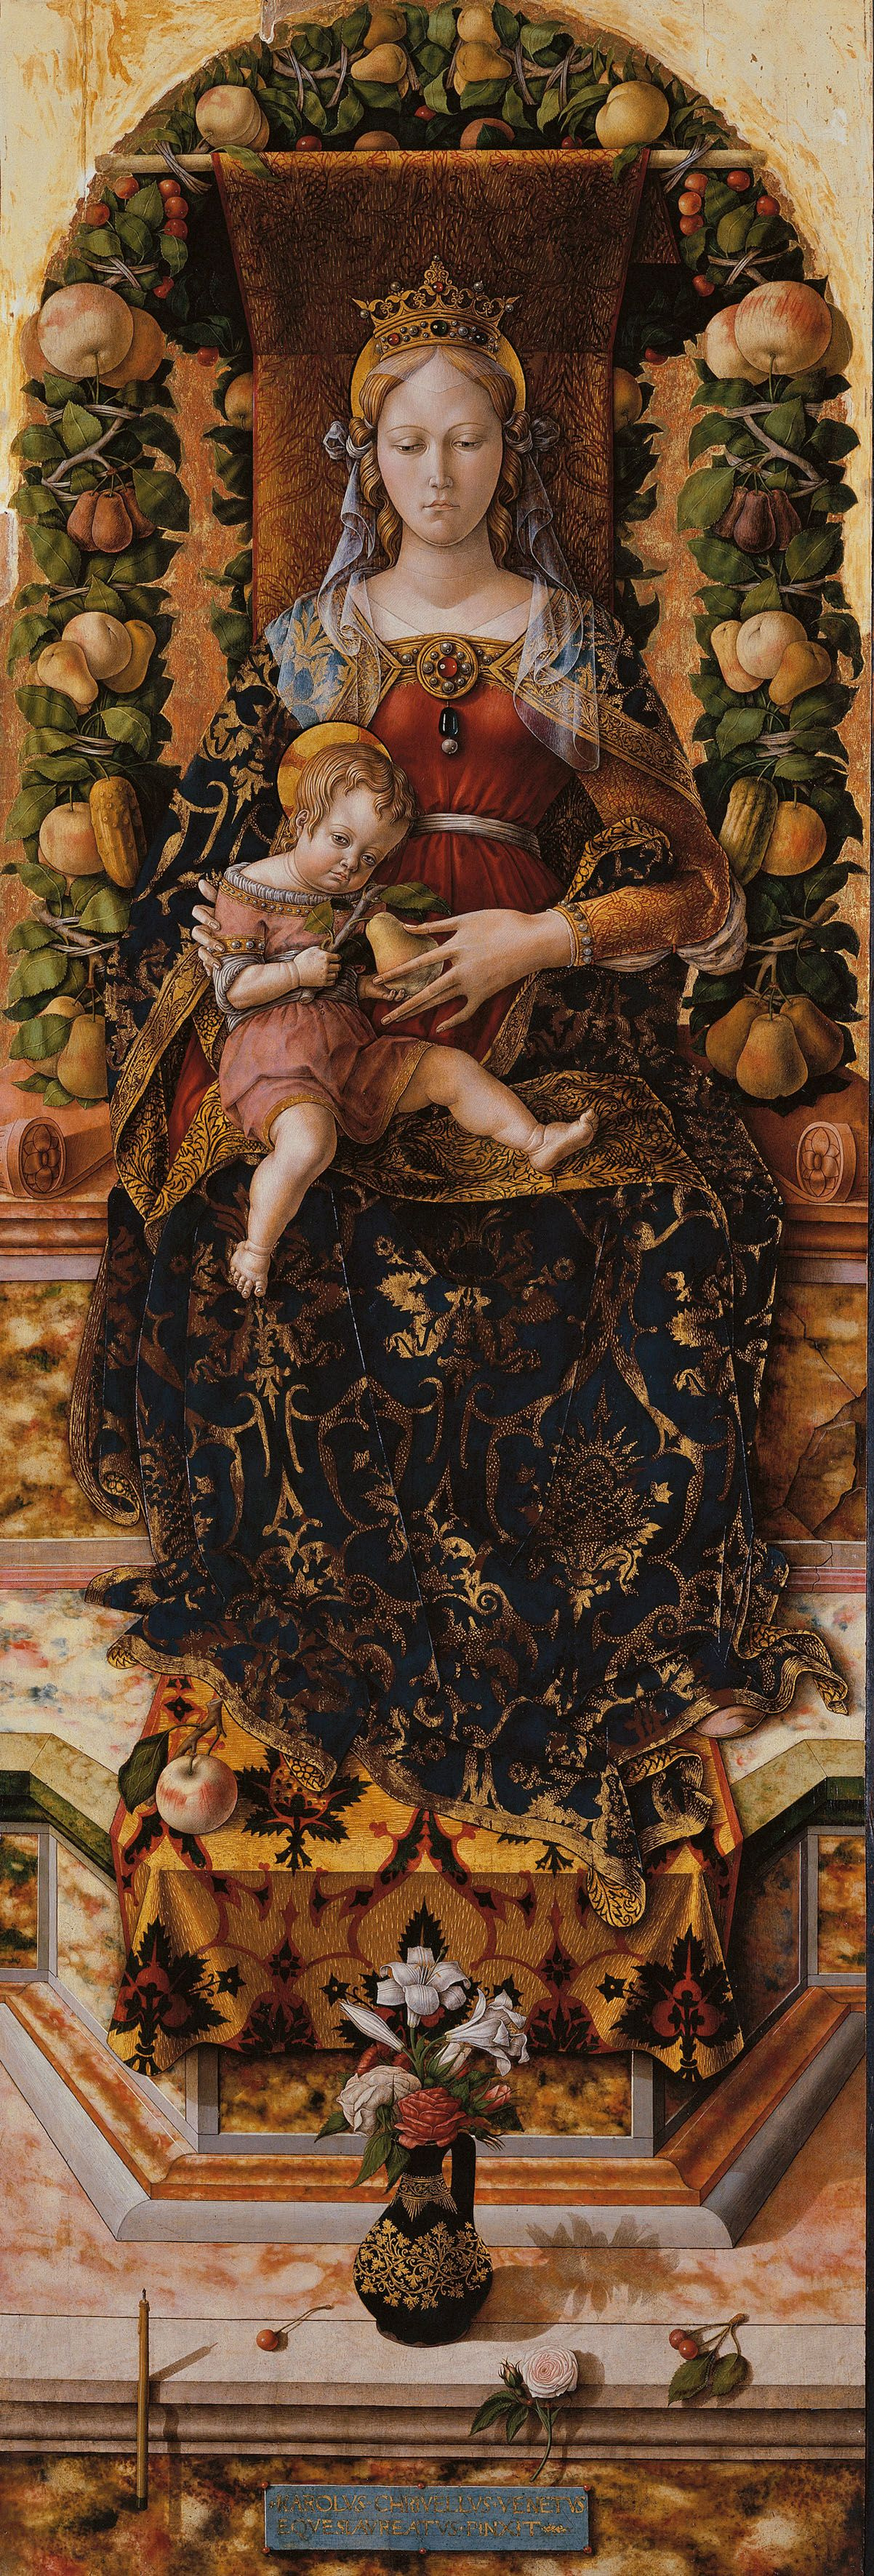 Carlo Crivelli. Madonna della Candelette. The altar of the Cathedral of Camerino